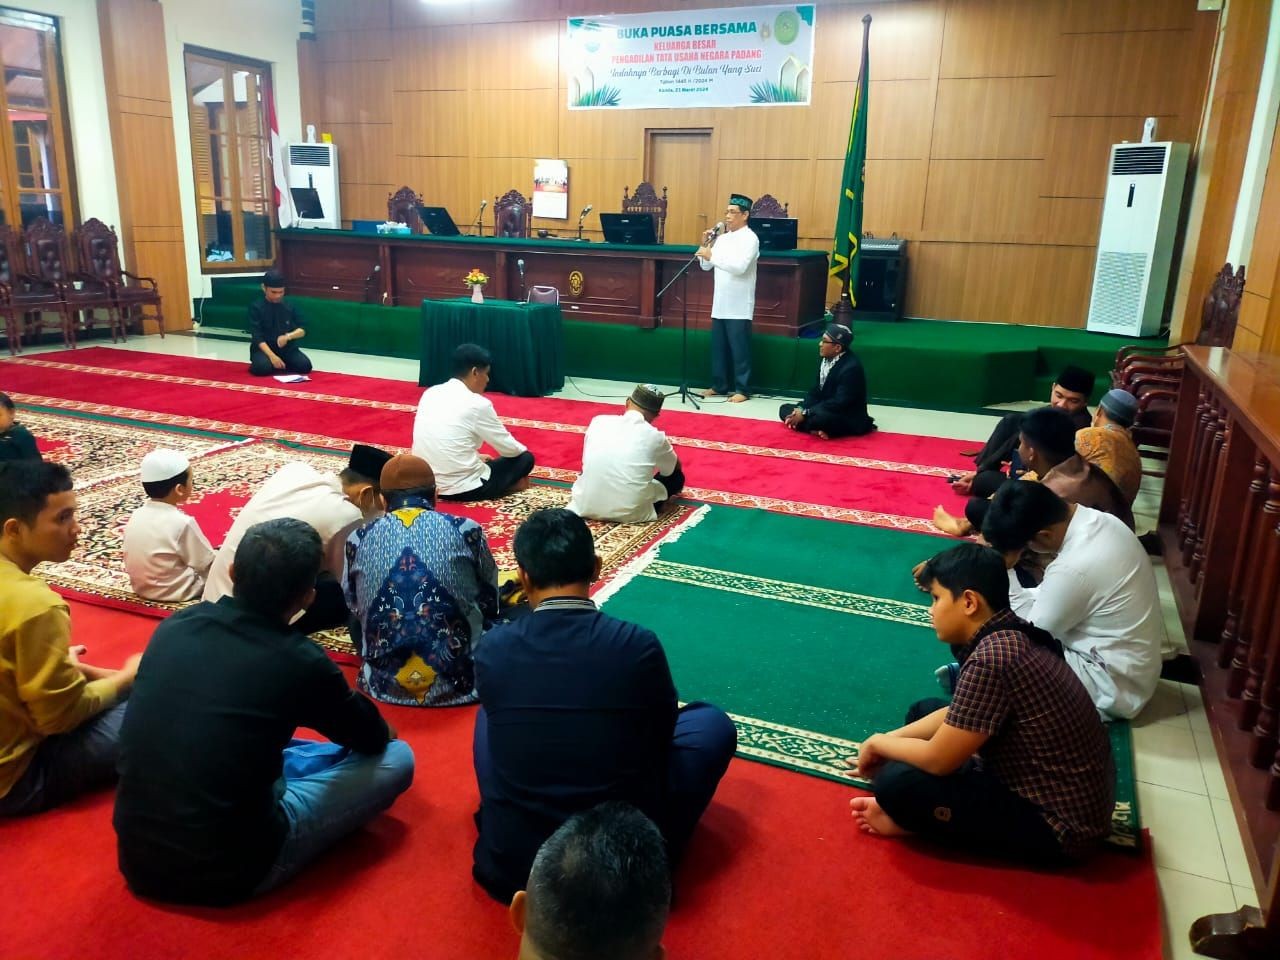 Pengadilan Tata Usaha Negara Padang mengadakan acara Buka Puasa Bersama